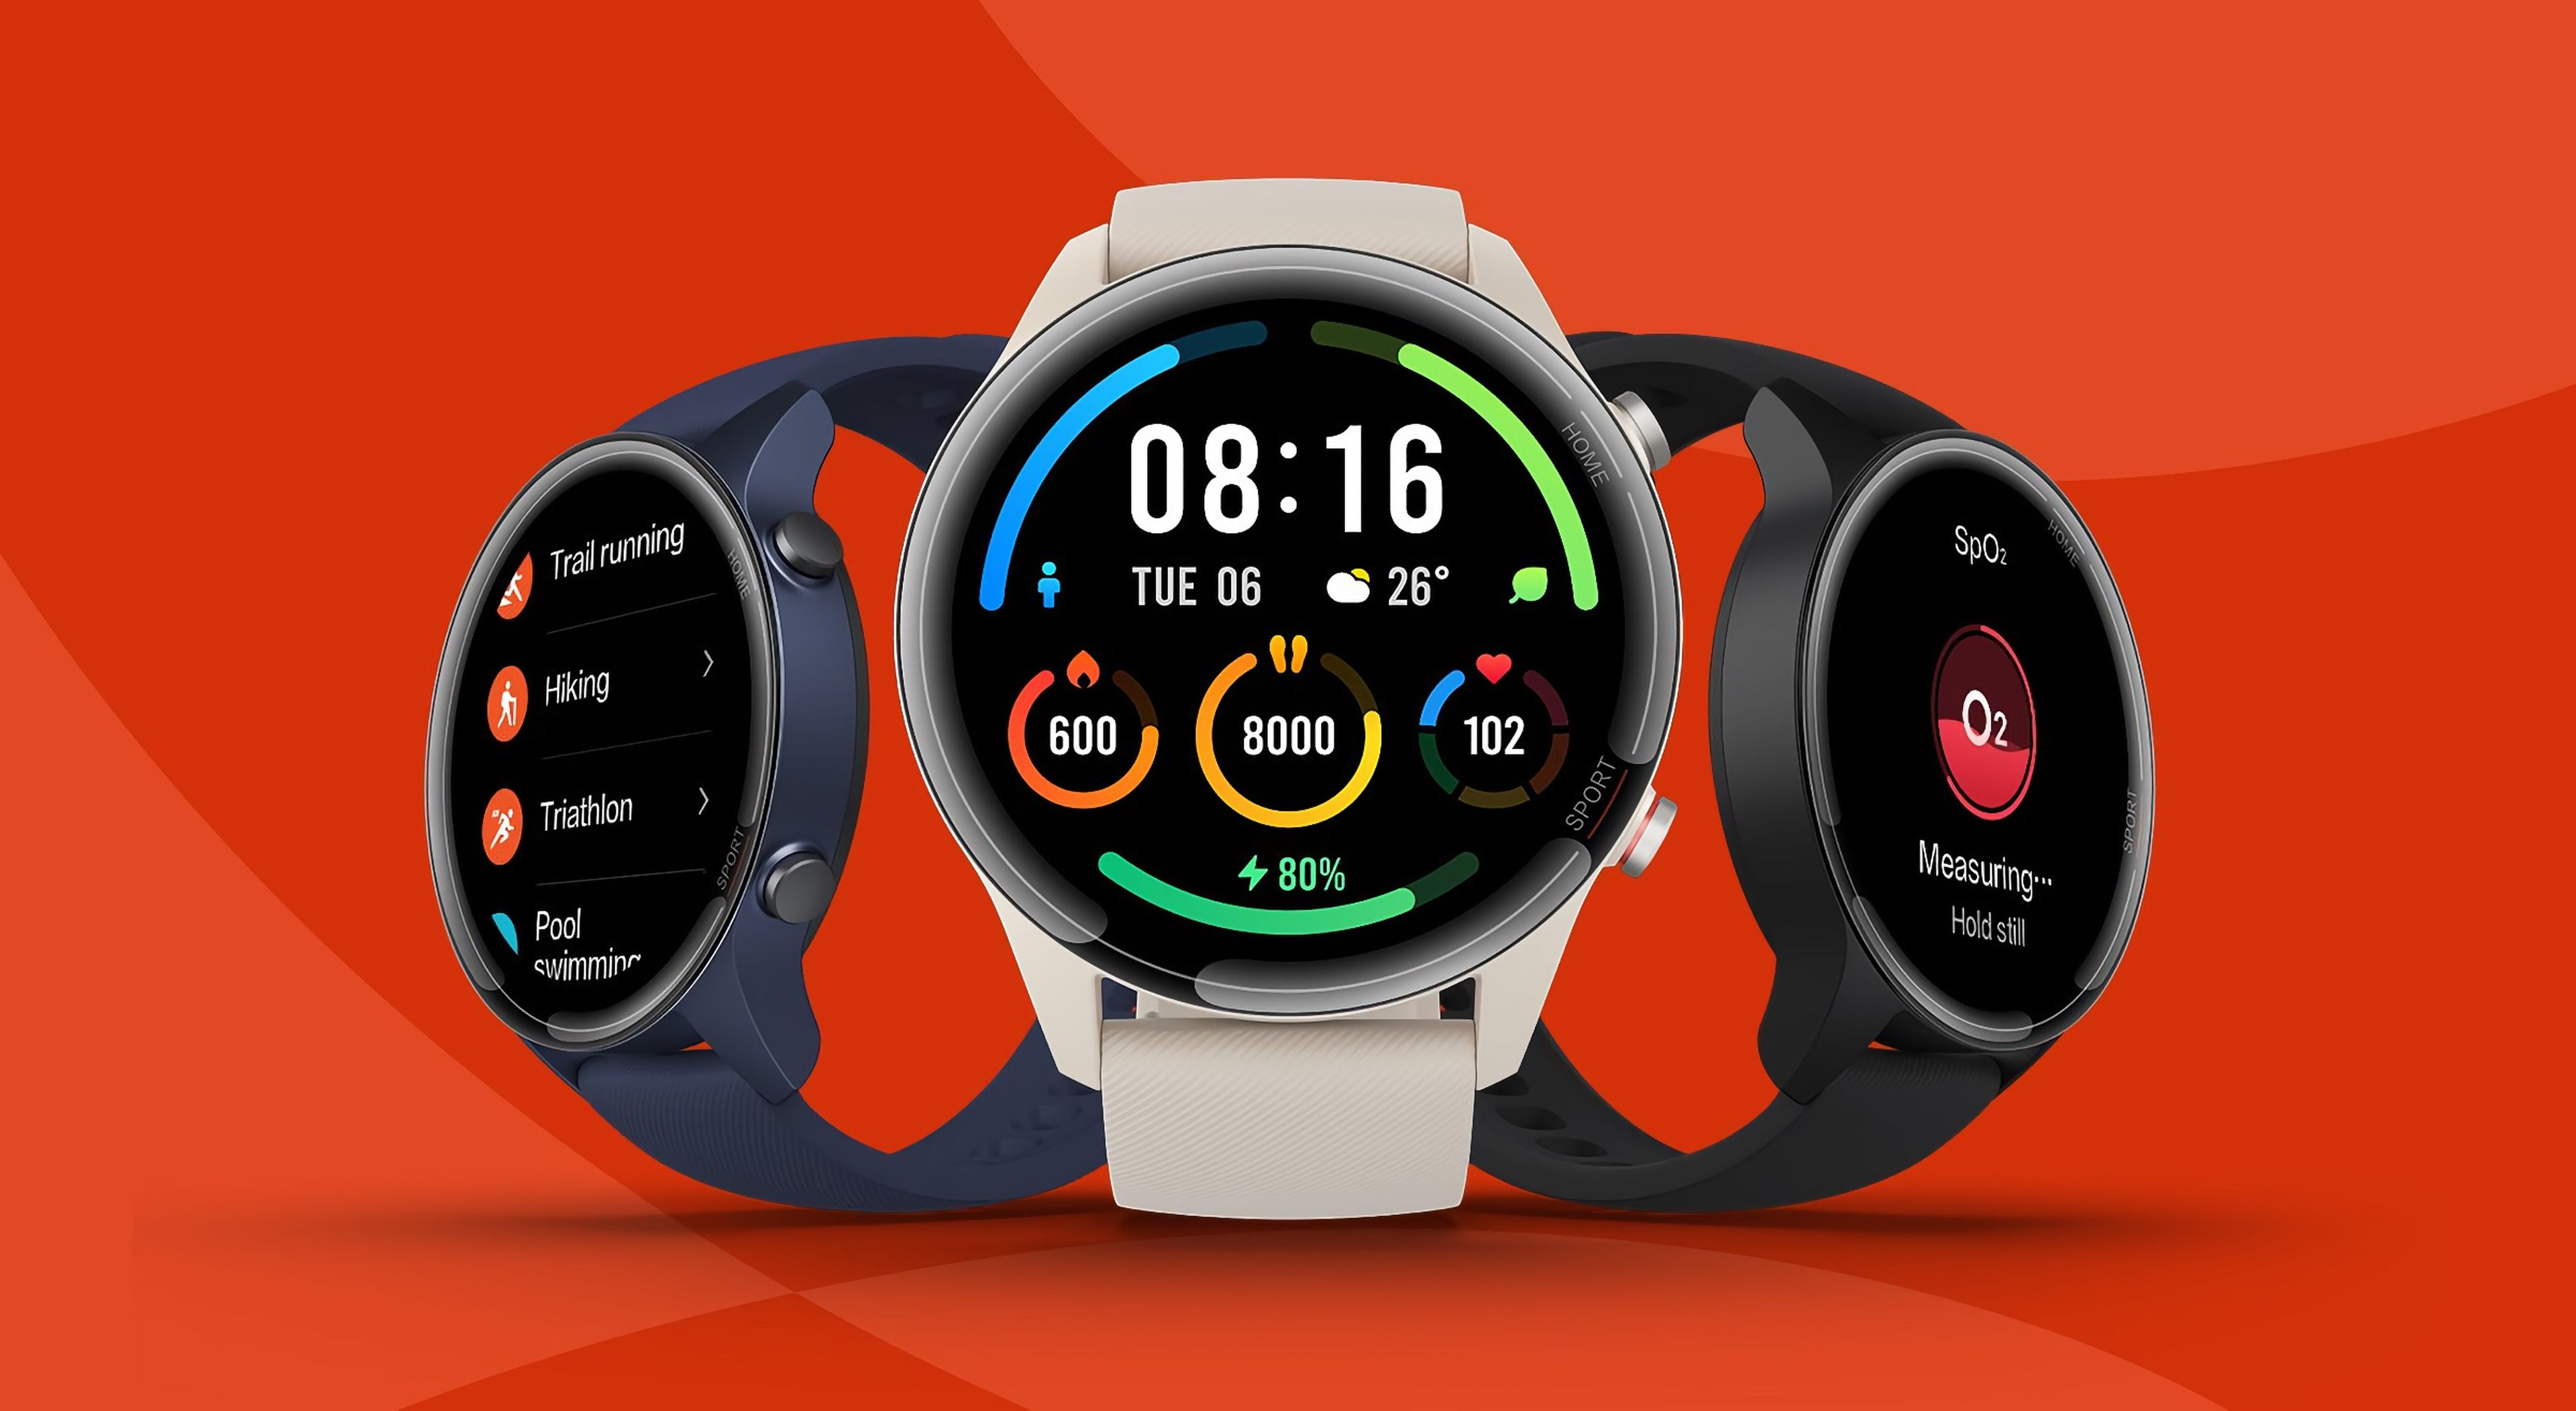 Cuidado Apple: Mi Watch es un reloj deportivo, con GPS y batería 16 días por solo 129€ | Computer Hoy